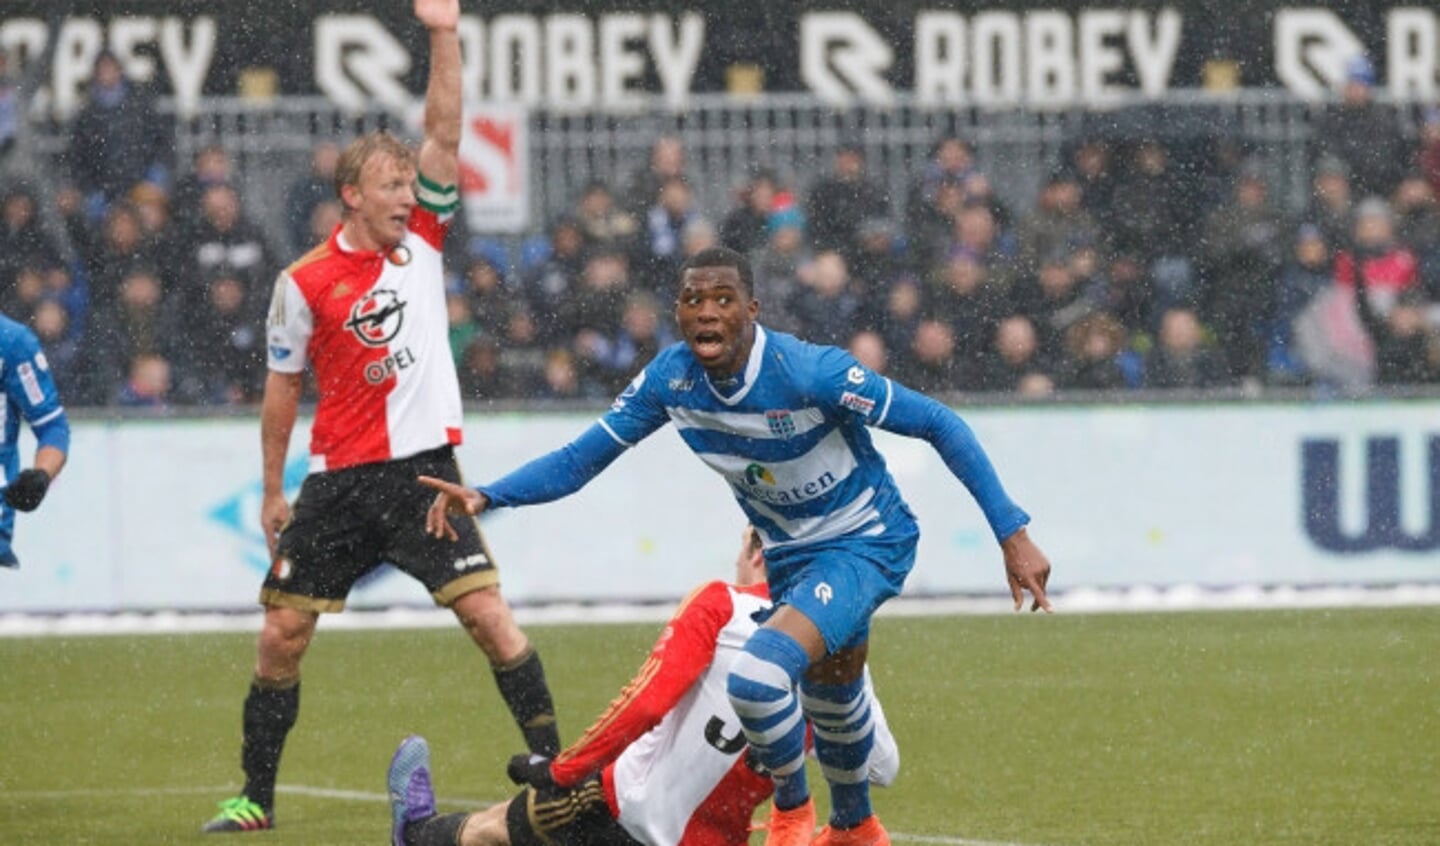  Pec Zwolle - Feyenoord Seizoen 2015-2016. 3-1.